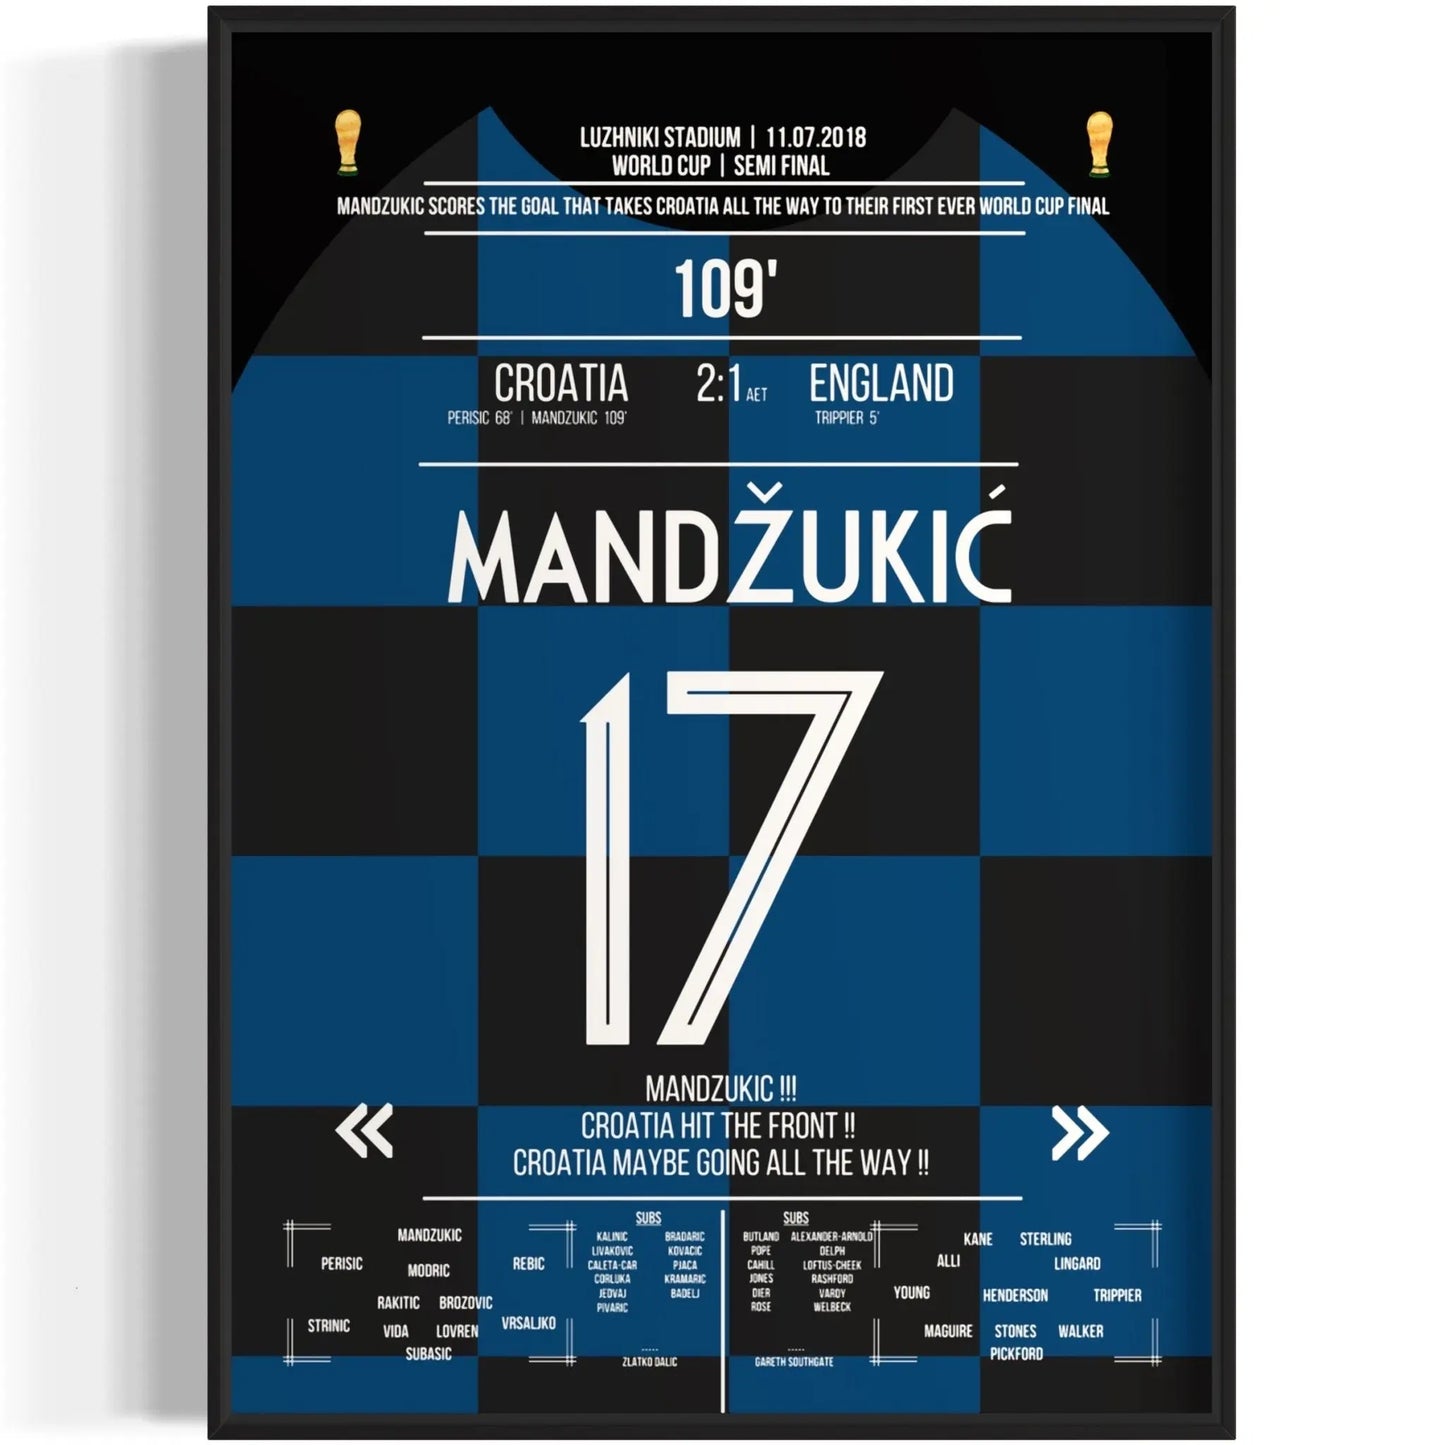 Das Tor zum WM-Finale! Mandzukic schießt Kroatien zum Sieg gegen England 2018